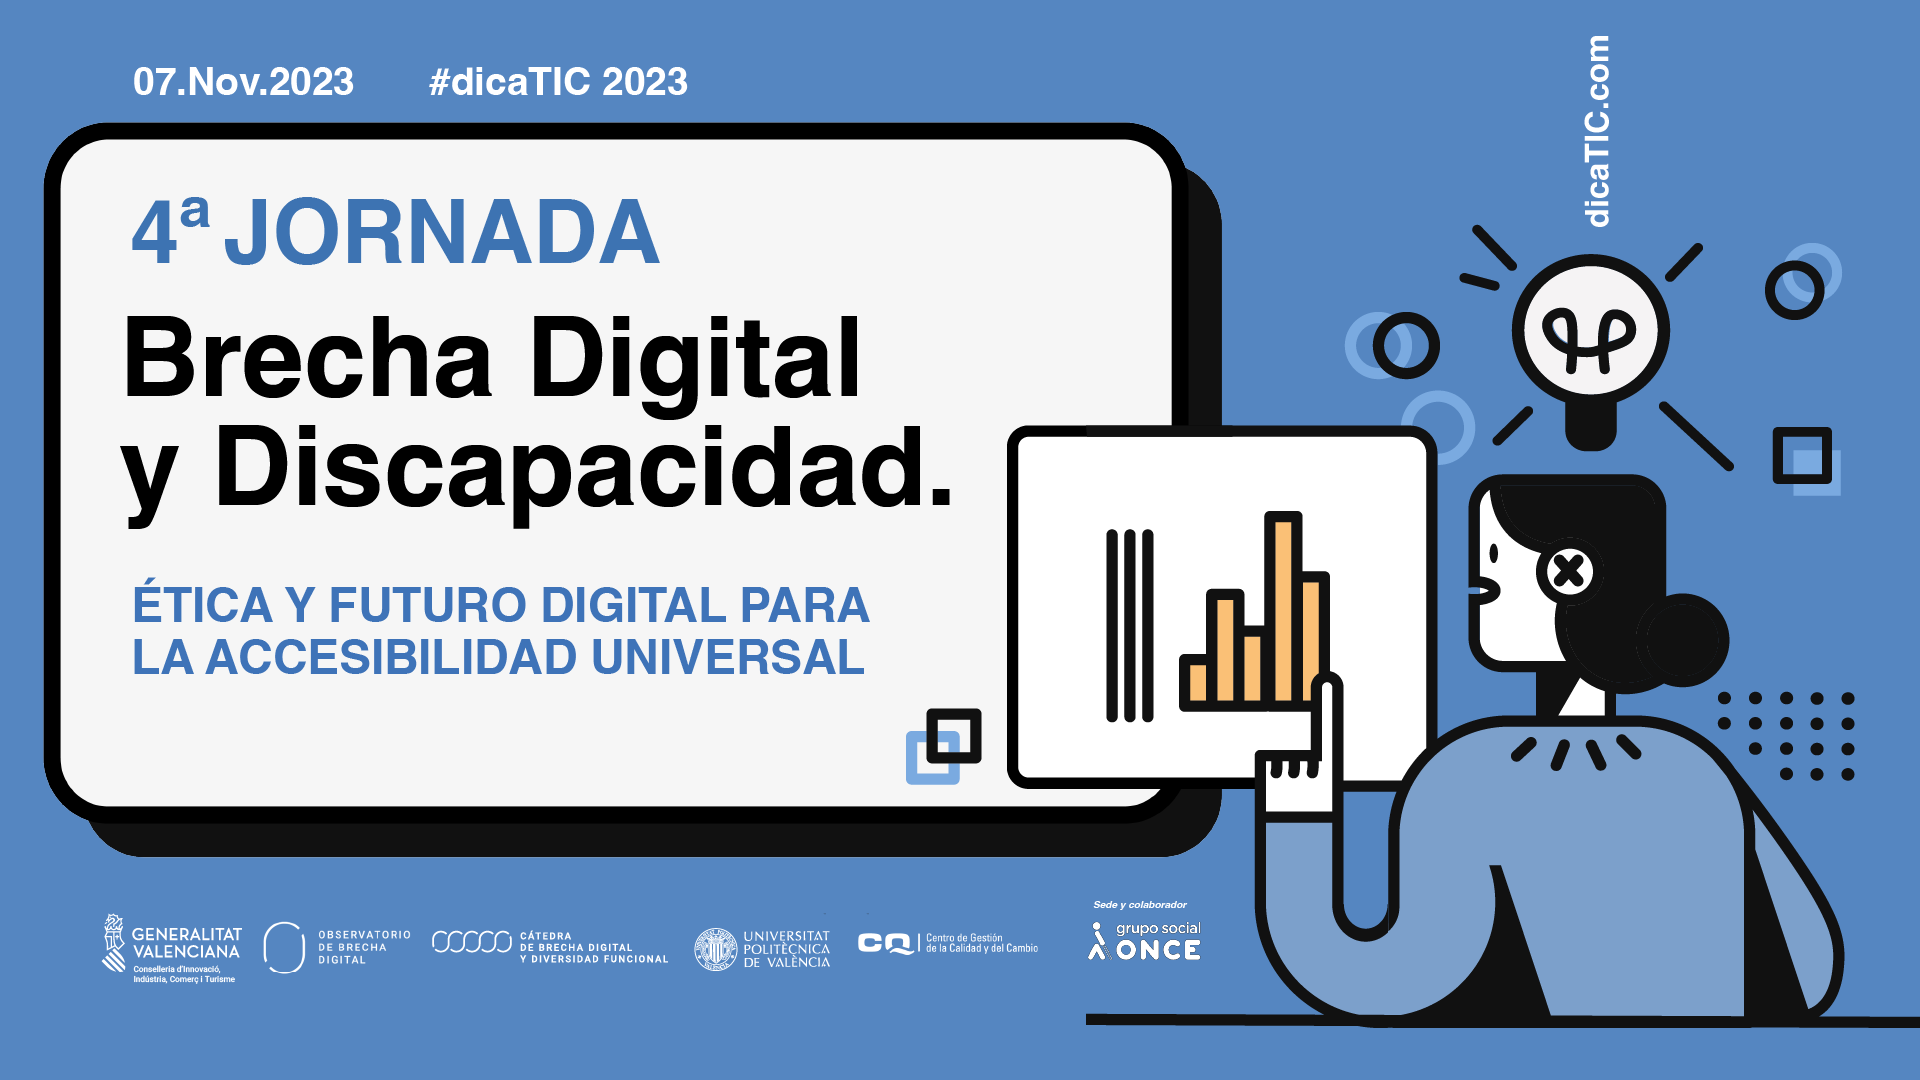 Jornada DicaTIC 2023. Brecha digital y discapacidad: Ética y futuro digital para la accesibilidad universal